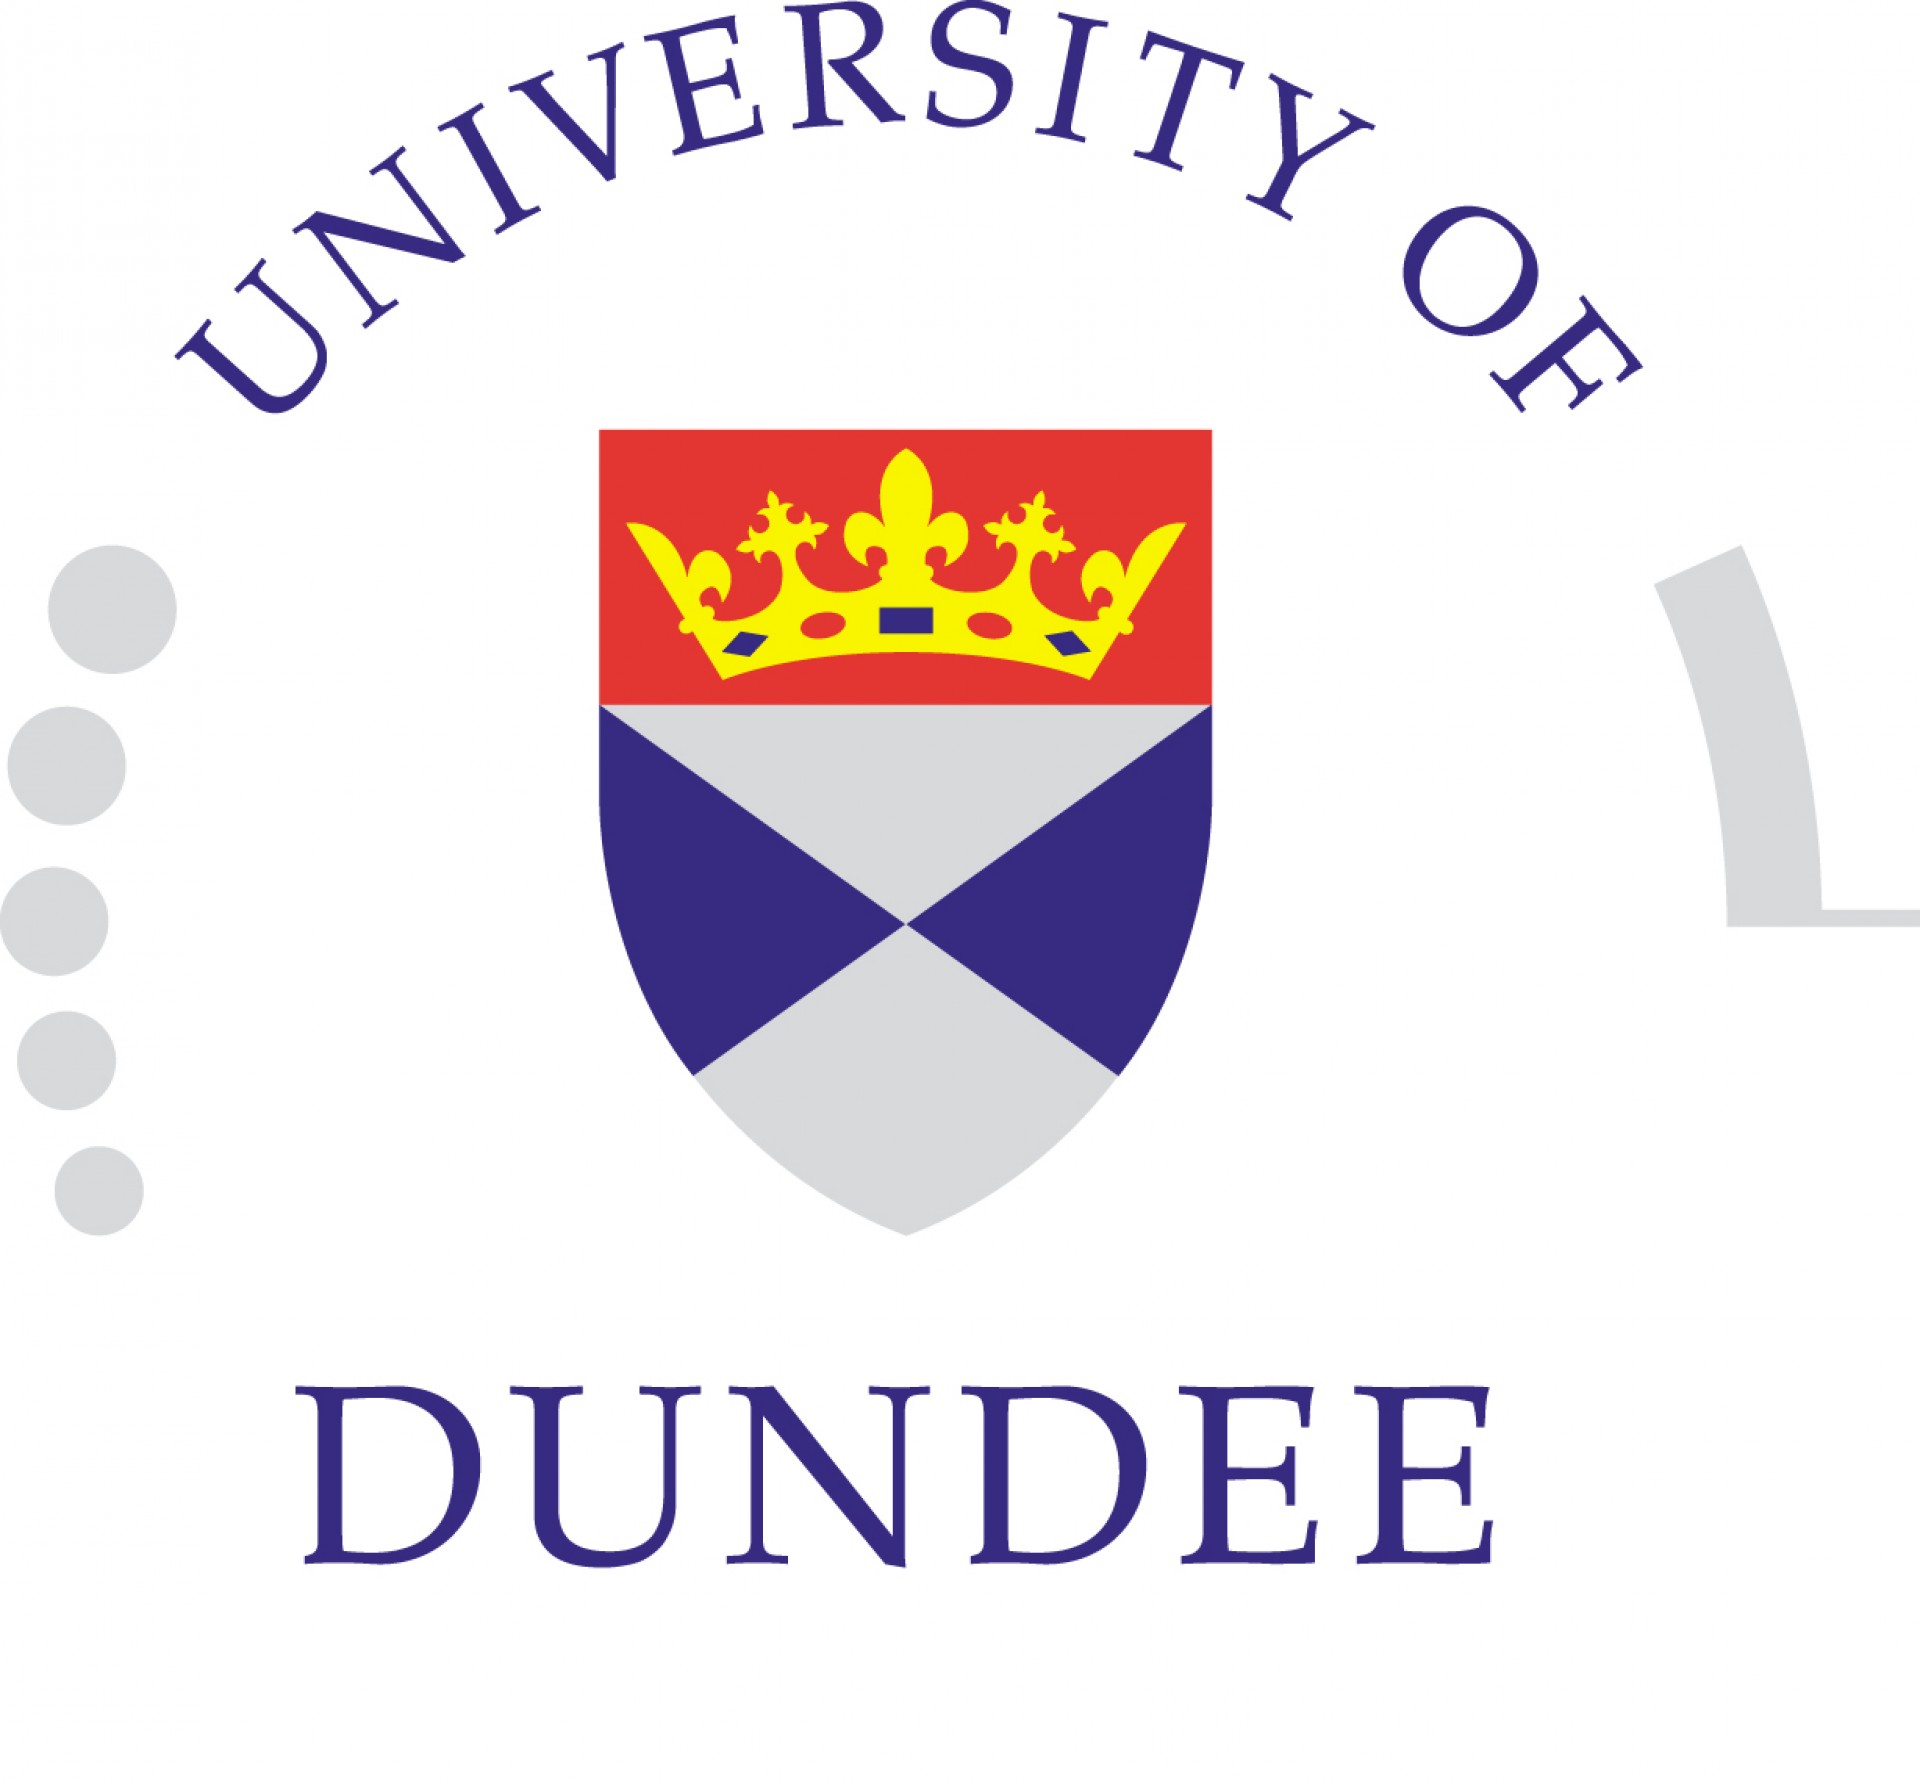 [UK] Học Bổng Của Đại Học Dundee, Vương Quốc Anh, 2017